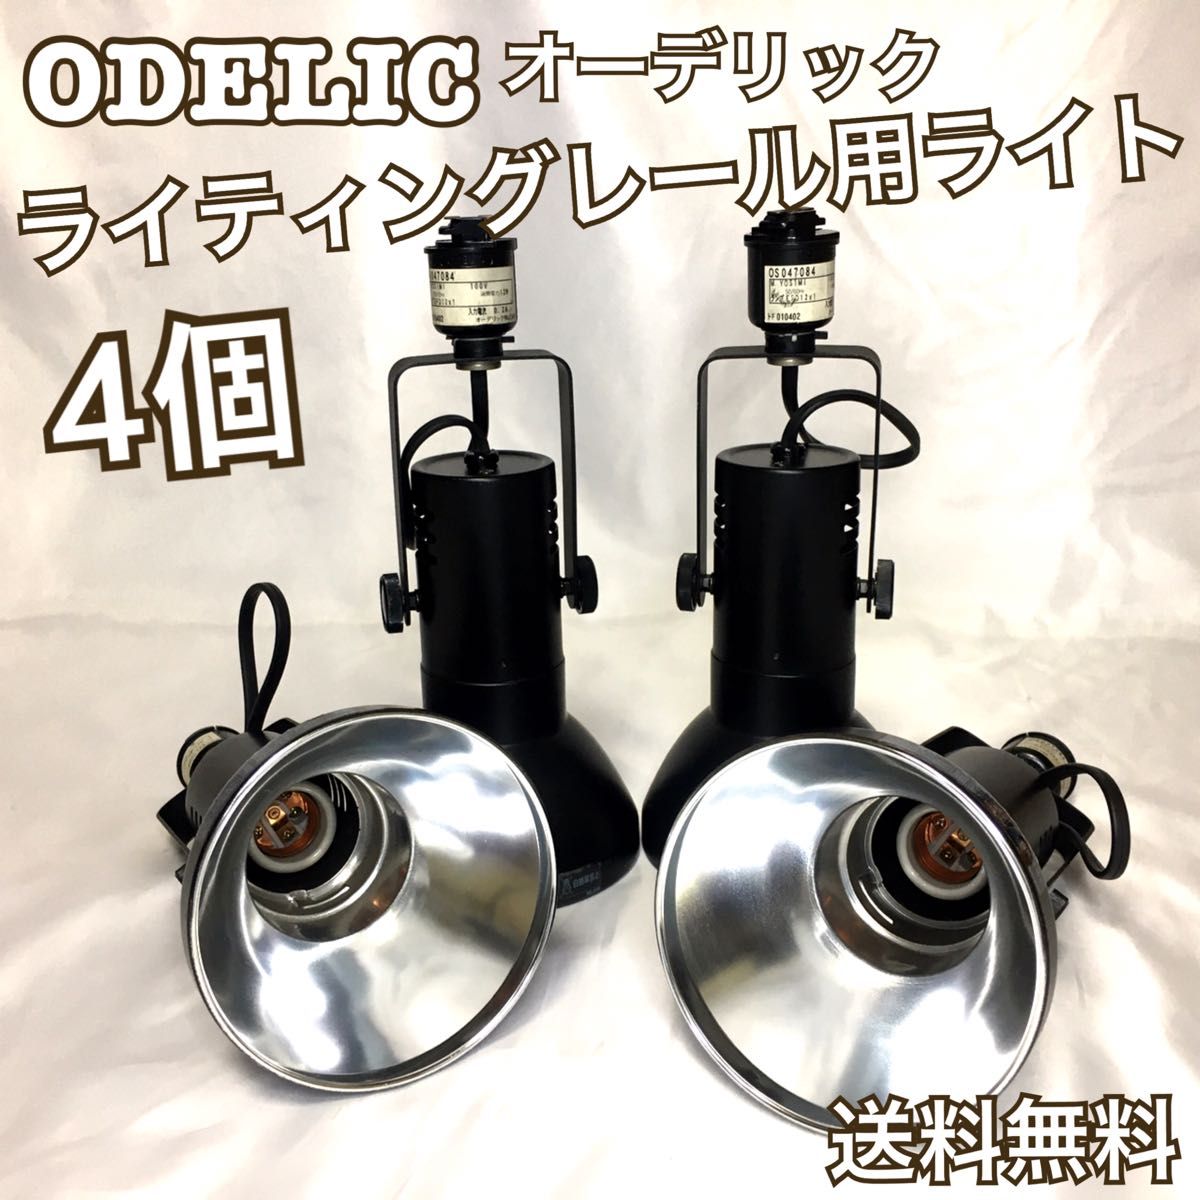 4個セット ODELIC オーデリック ライティングレール用 ライト No.2 - 照明